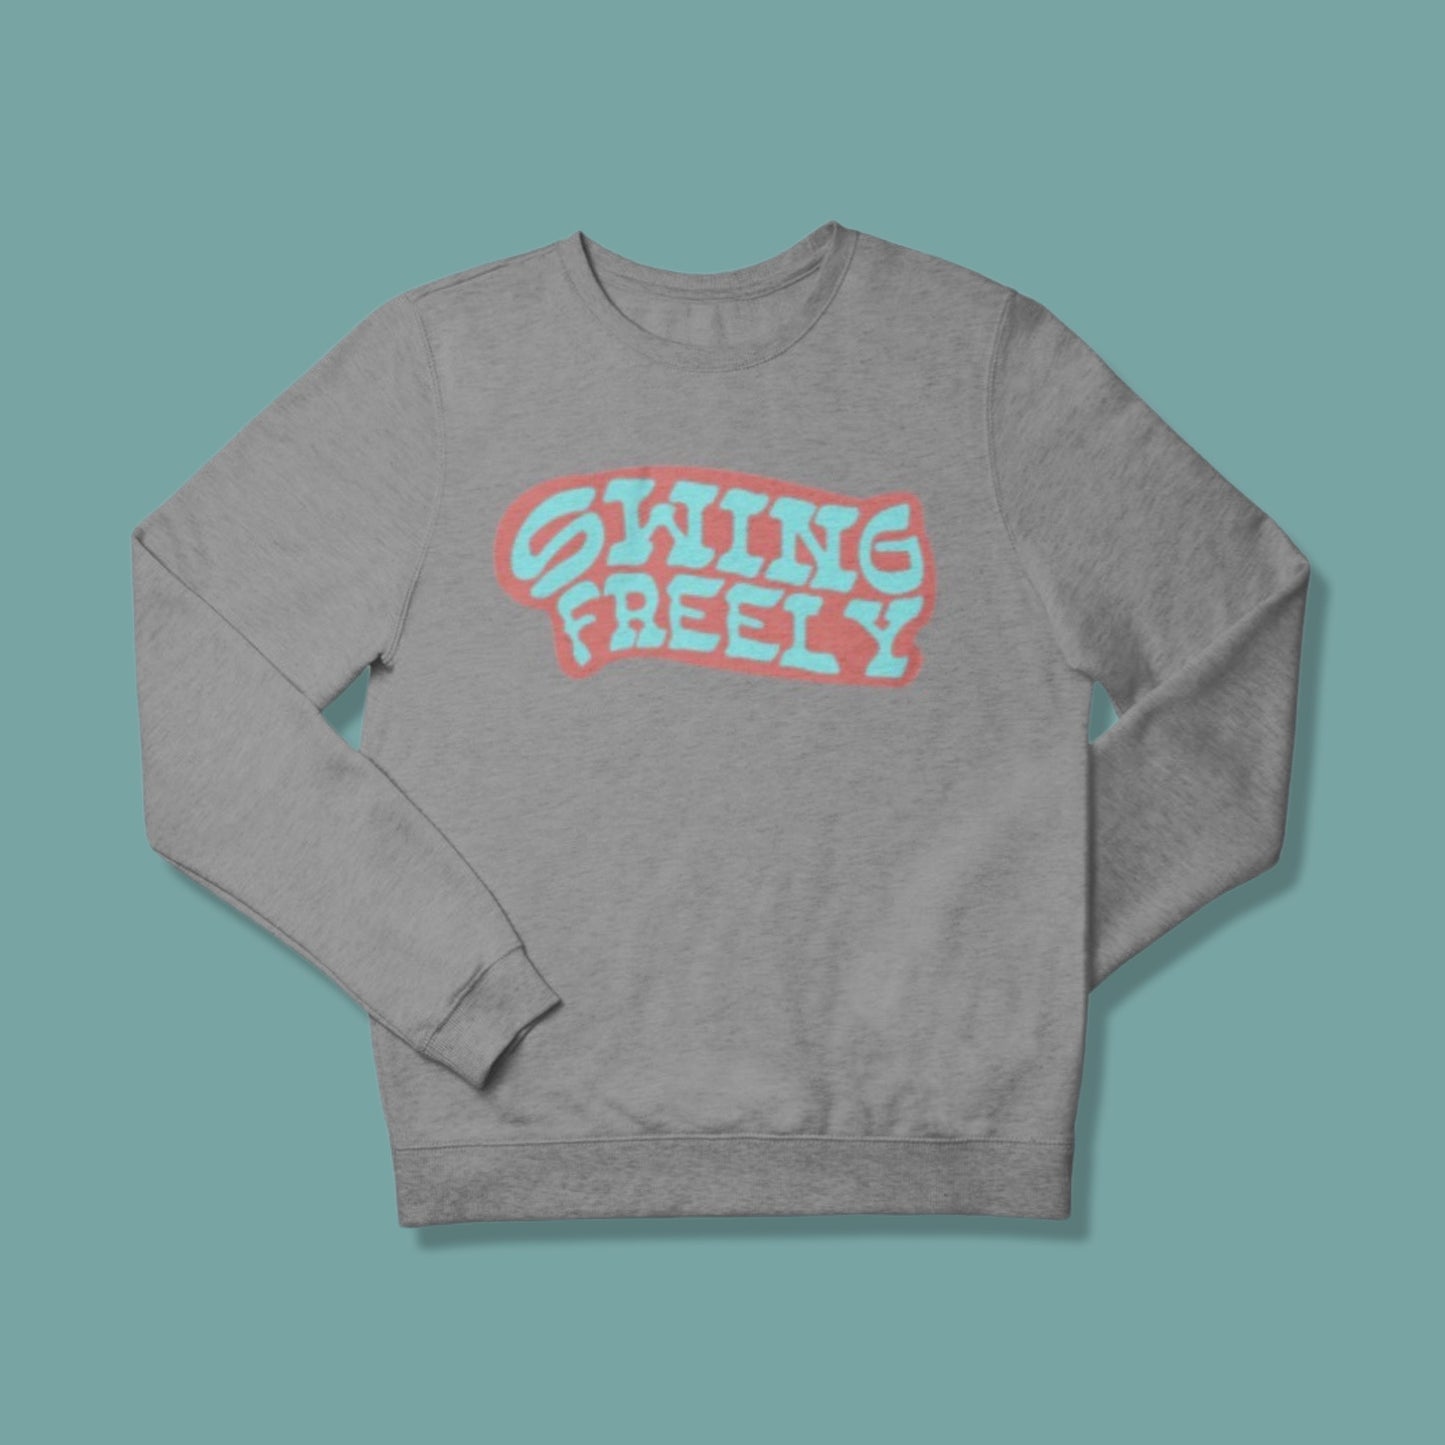 Swing freely sweatshirt